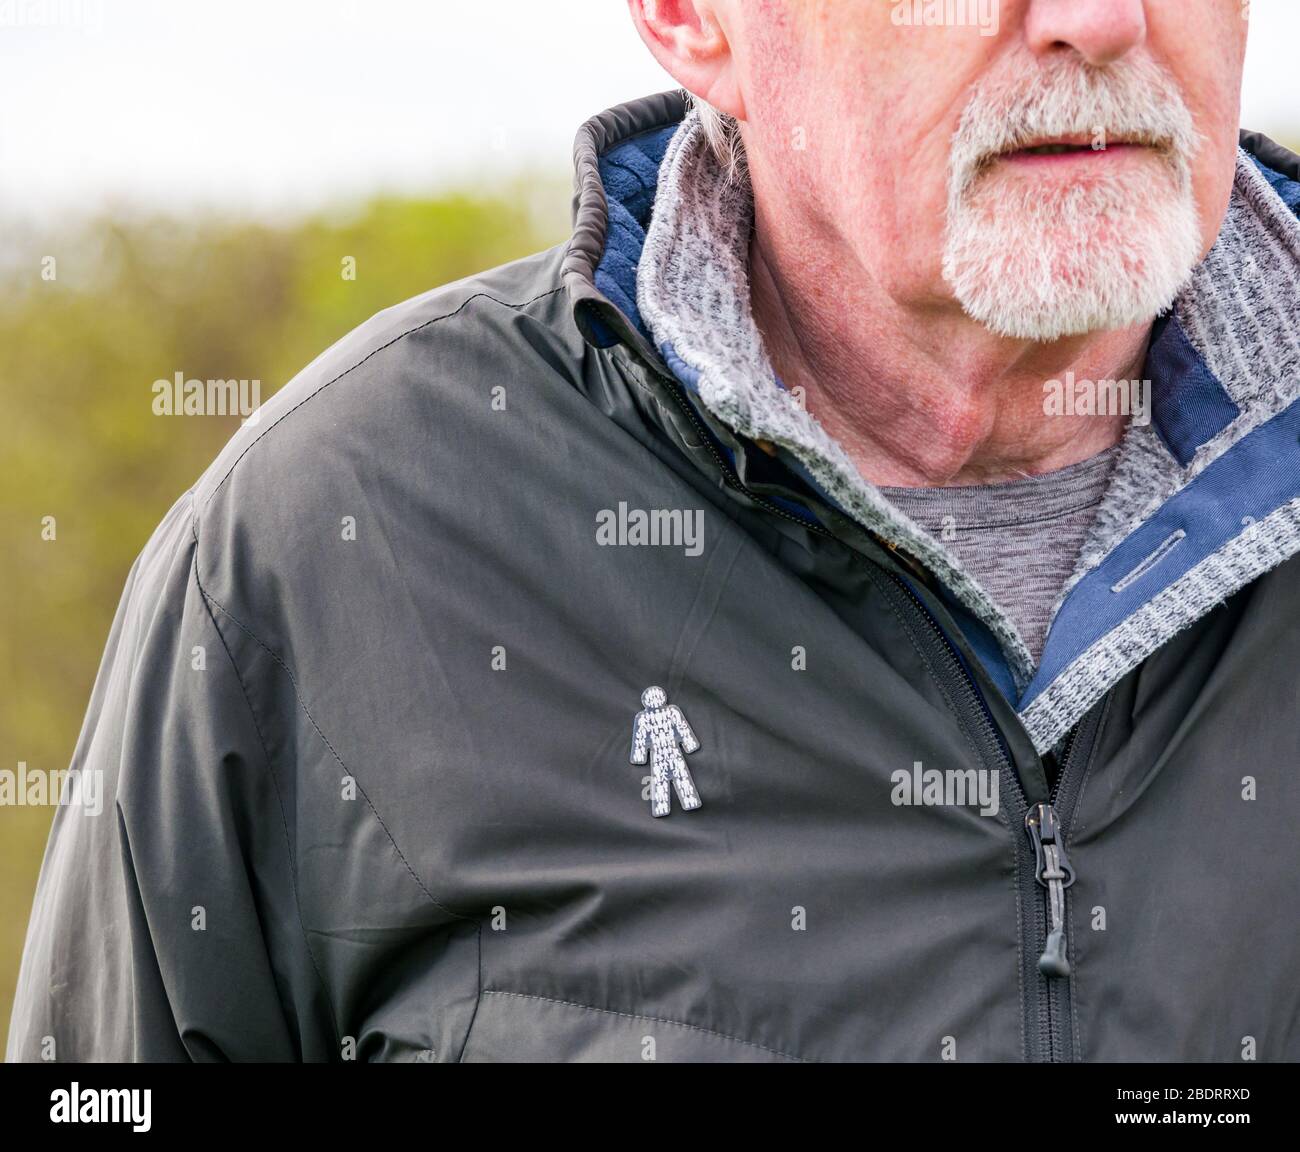 Hombre mayor con barba gris que lleva el pasador de la insignia benéfica del Reino Unido del cáncer de próstata fijado a la chaqueta para aumentar la conciencia de la condición común de la salud, Reino Unido Foto de stock